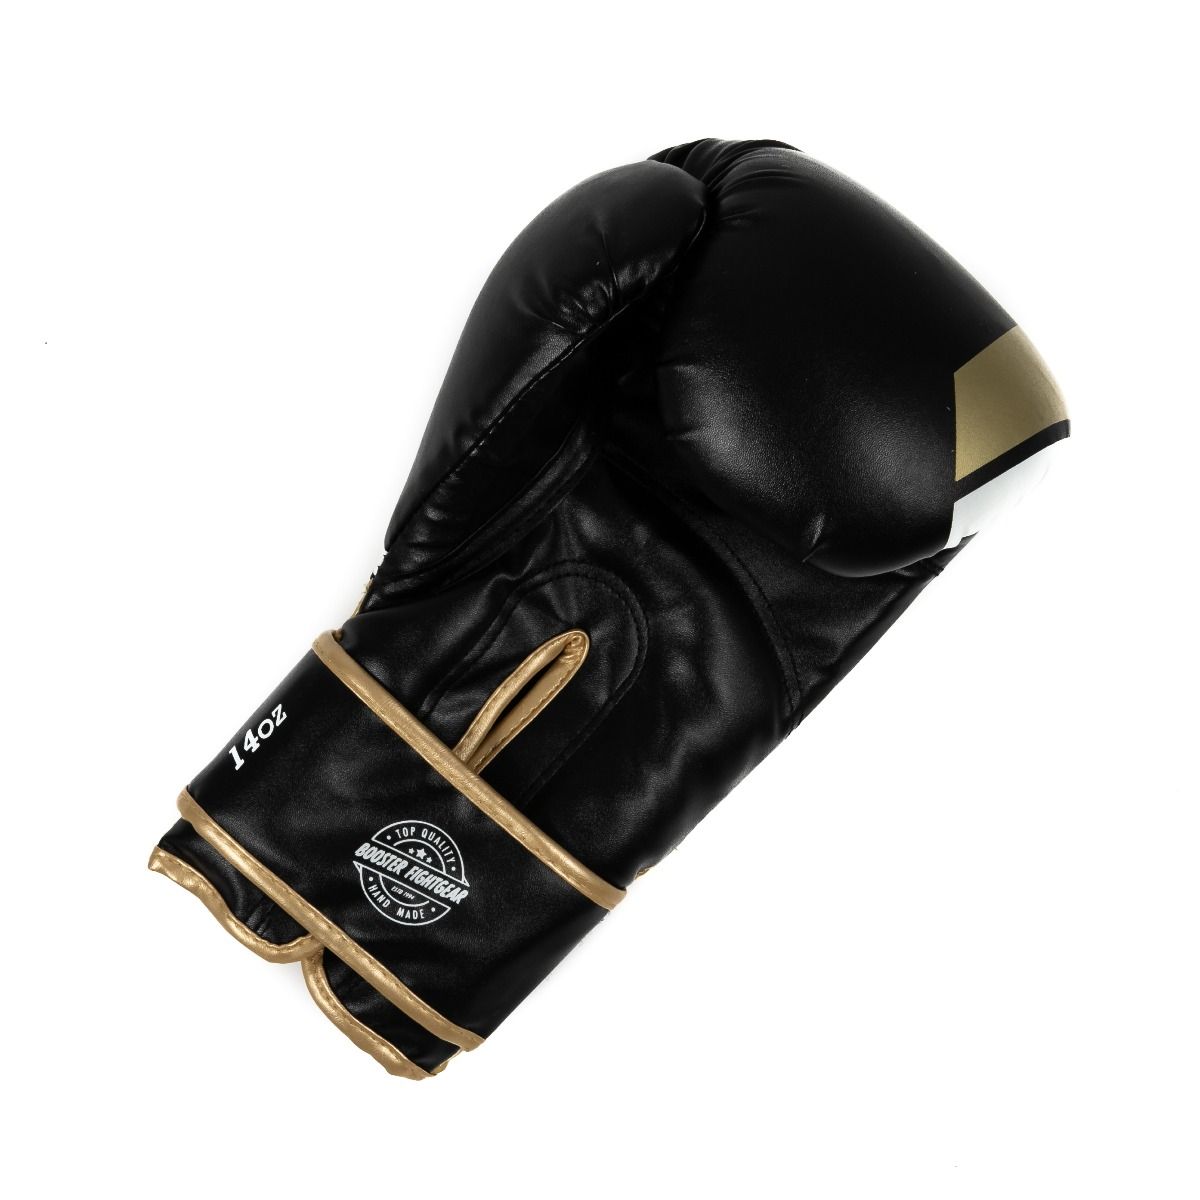 Booster Leather Boxing Gloves BT SPARRING V2 GOLD